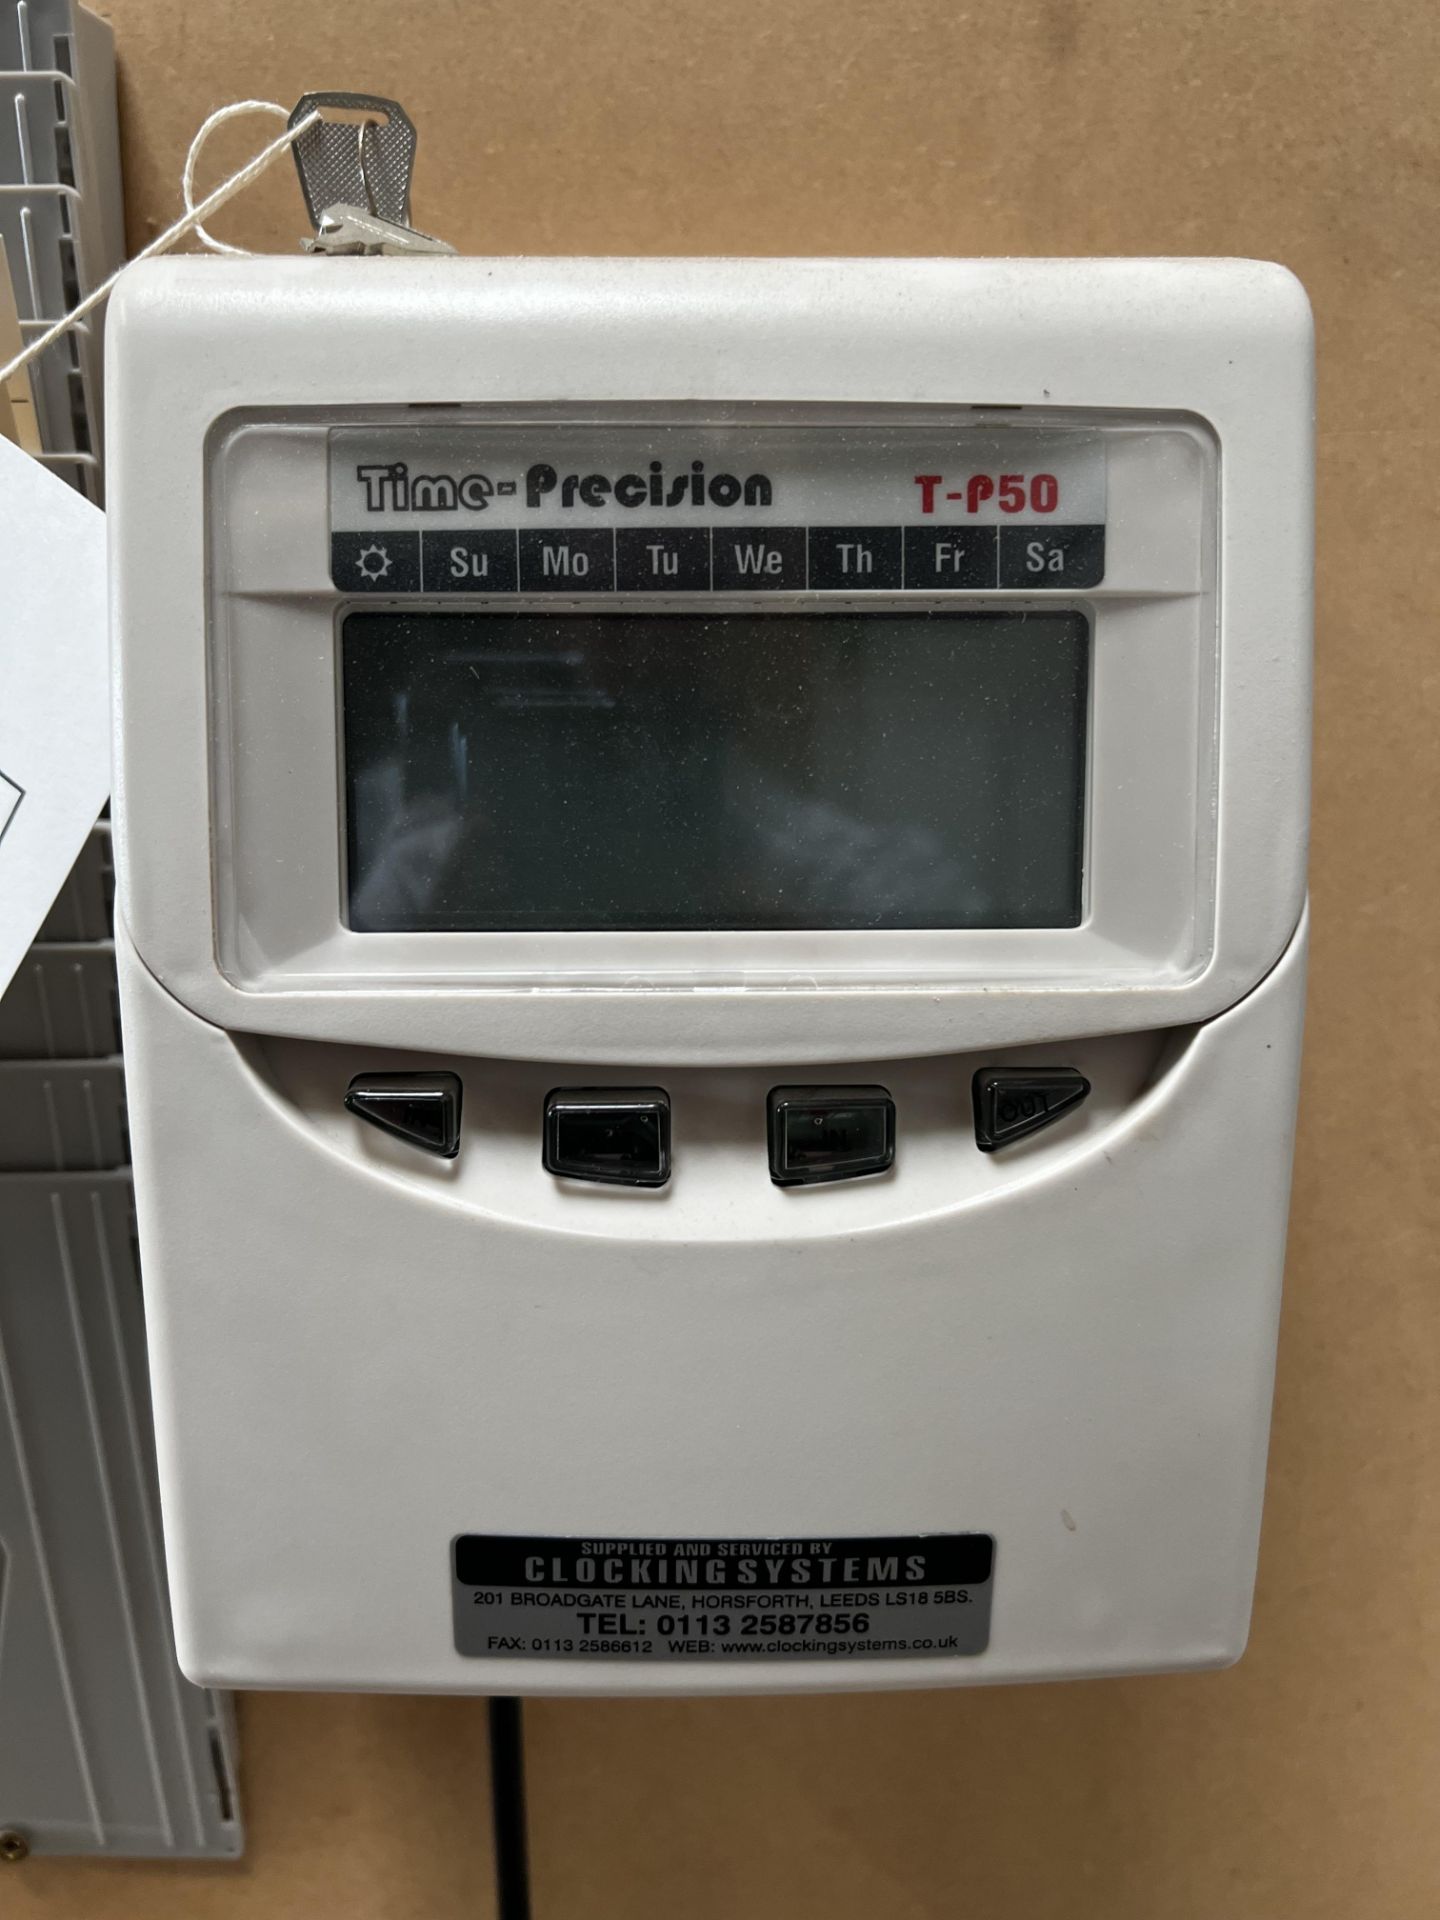 Time Precision T-P50 clock in machine